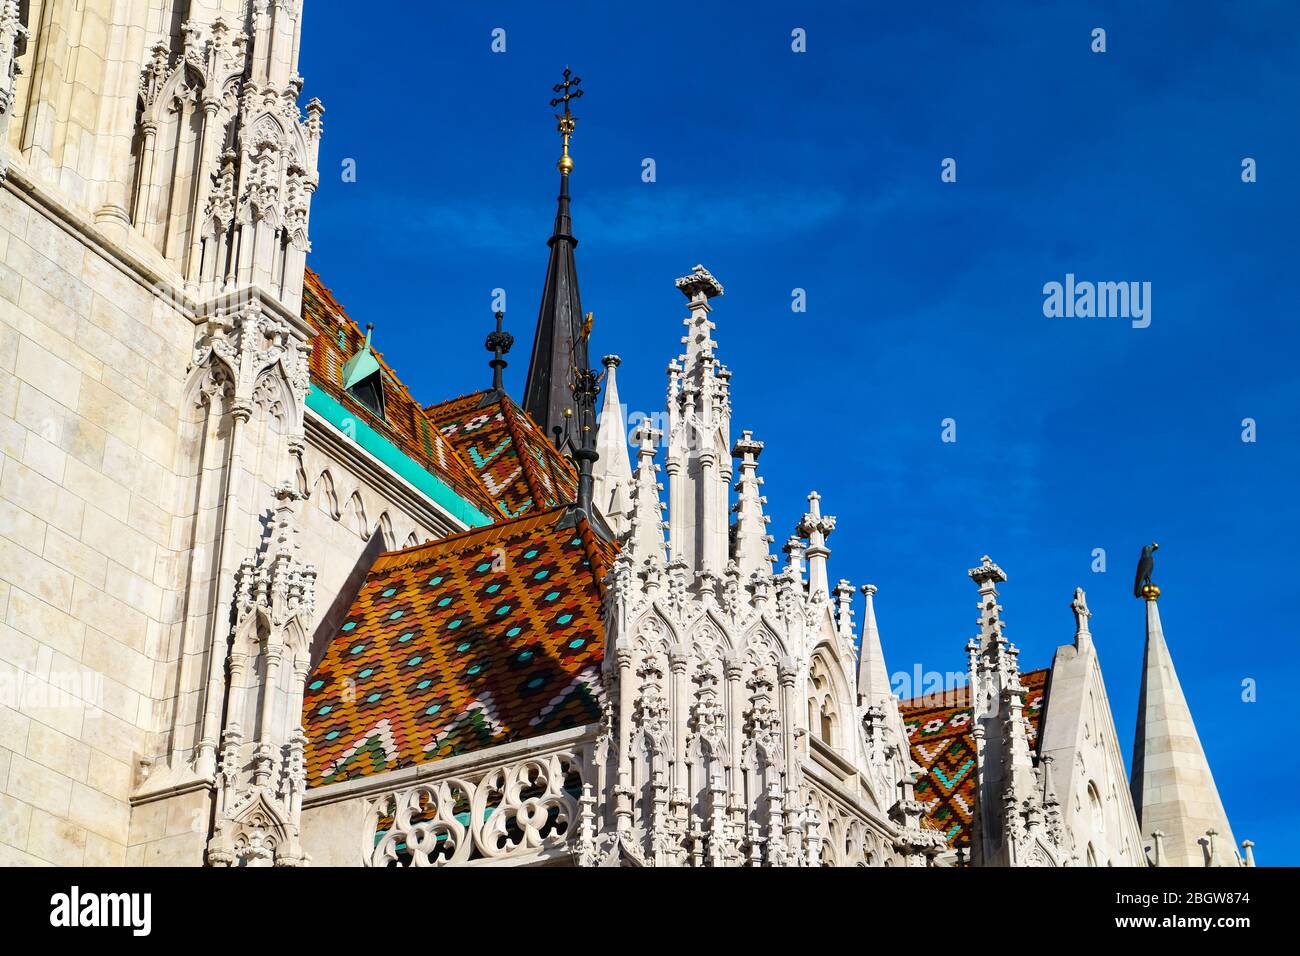 Dettagli sul tetto con piastrelle ornamentali floreali sulla chiesa di Mathias, una delle principali attrazioni del Bastione dei pescatori nella parte Buda di Budapest, Ungheria. Foto Stock